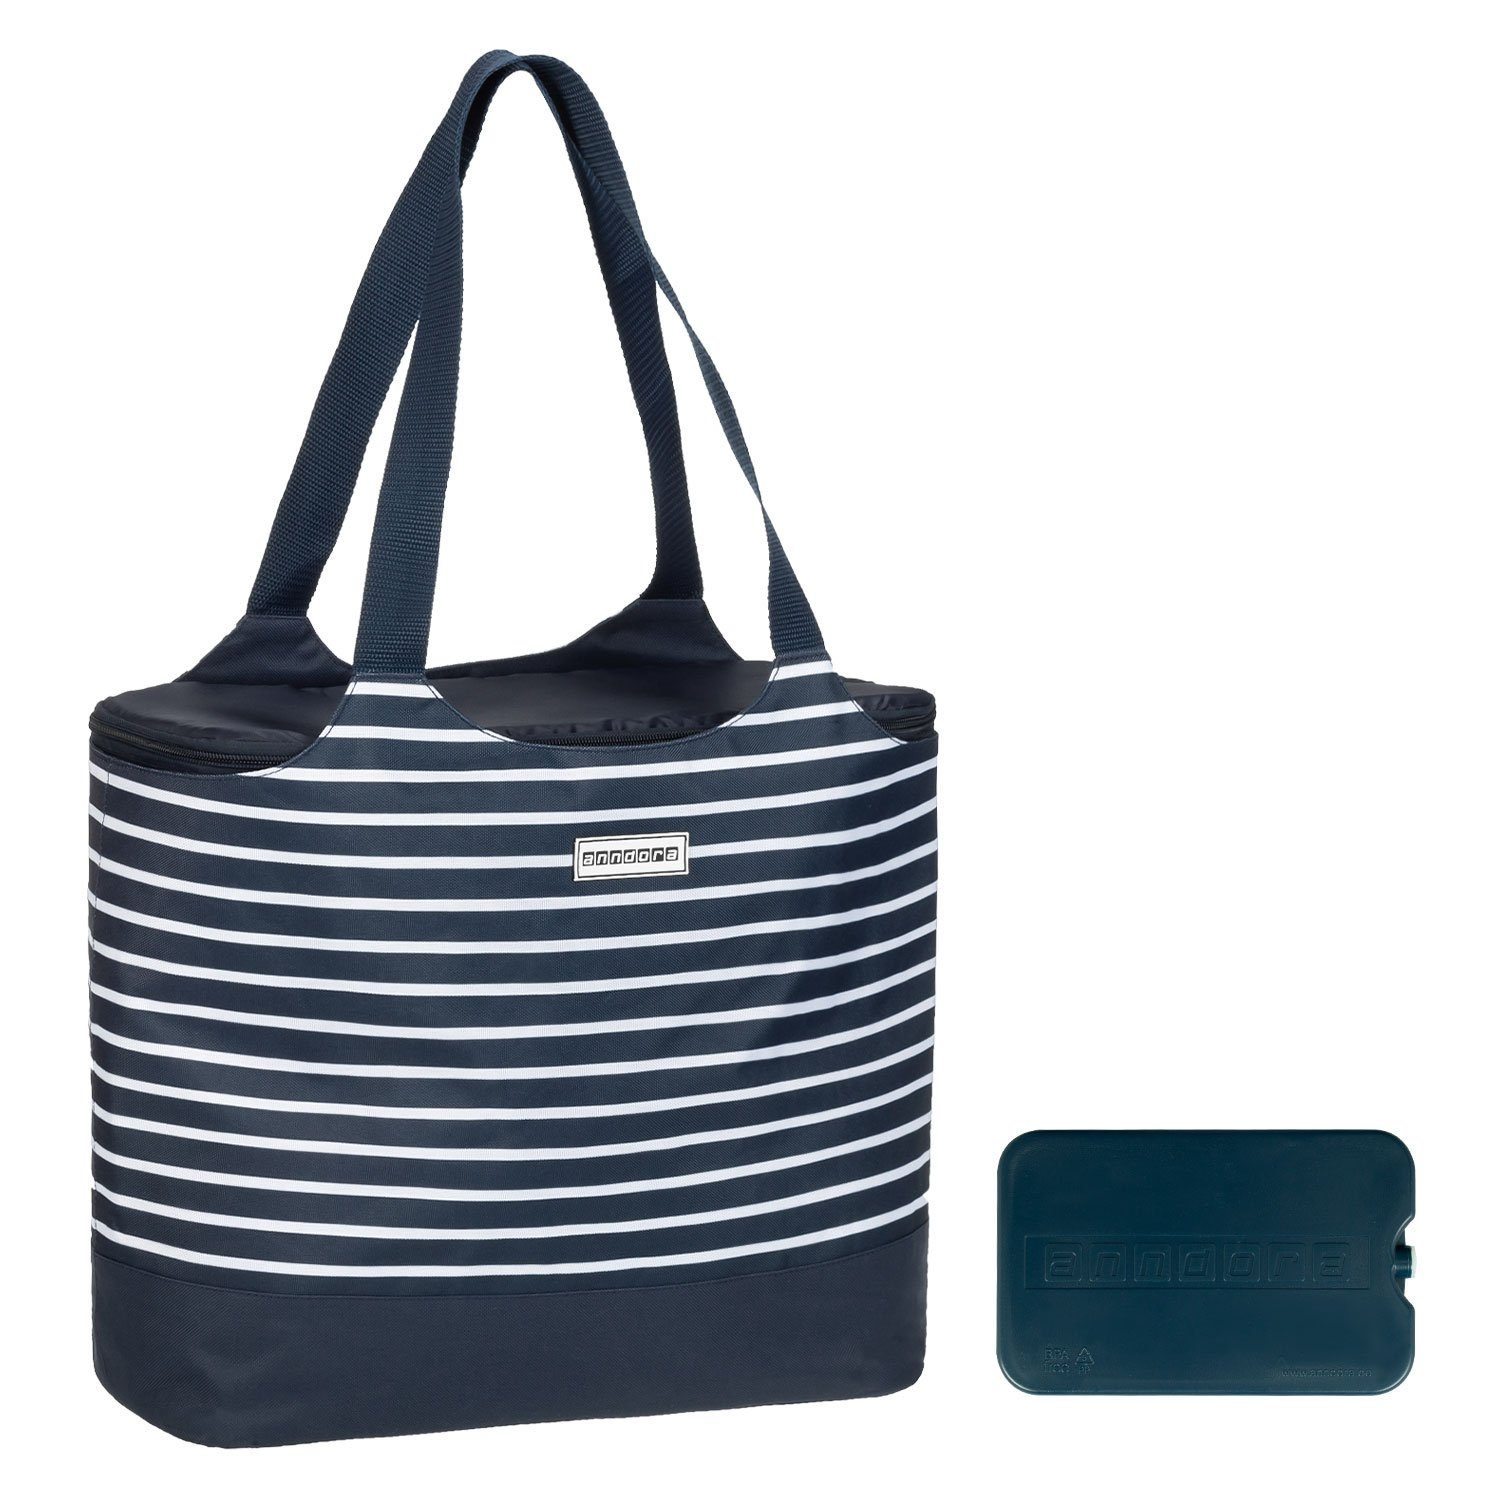 anndora Picknickkorb 2 in 1 Einkaufstasche + Kühltasche + Kühlakku - Design zur Auswahl Blau